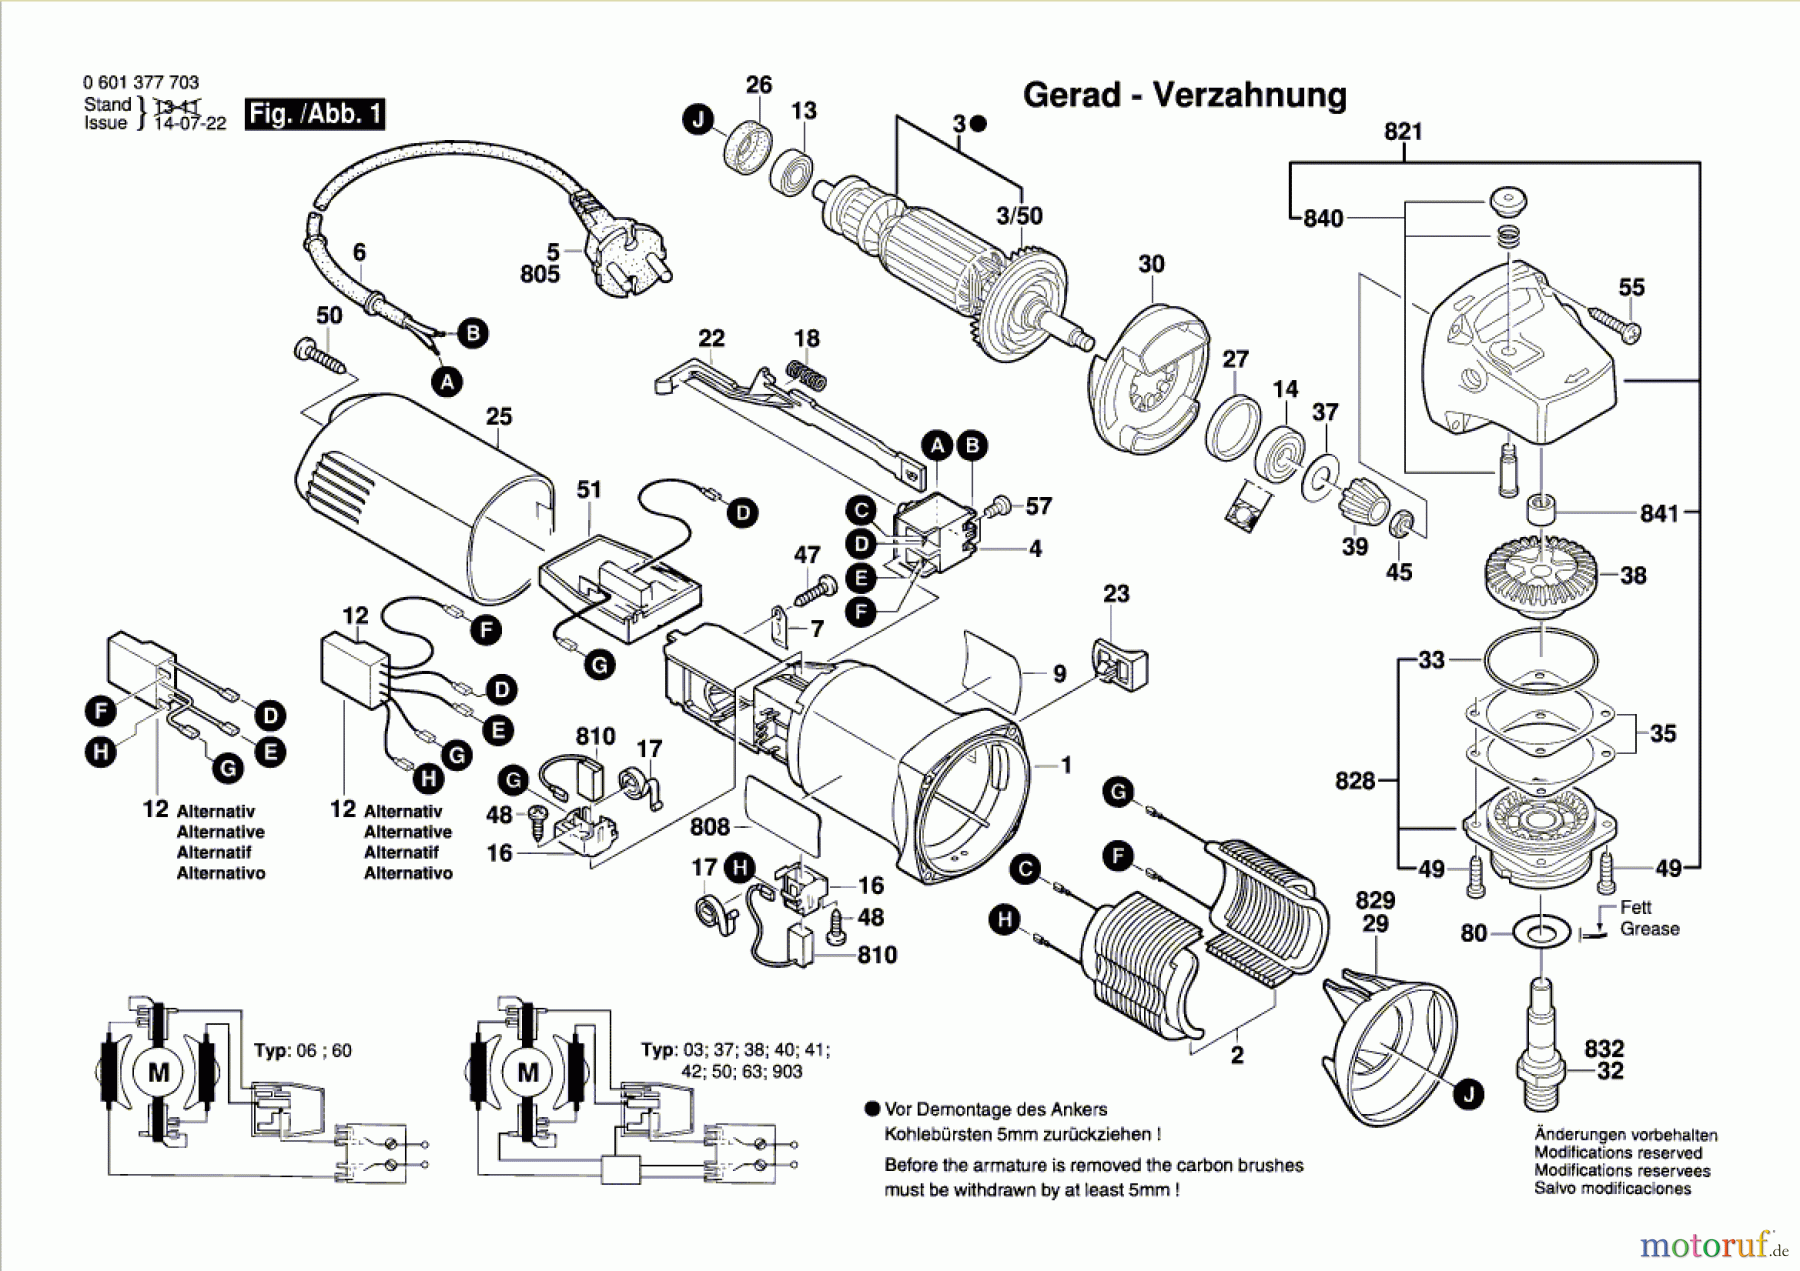  Bosch Werkzeug Winkelschleifer GWS 8-125 C Seite 1